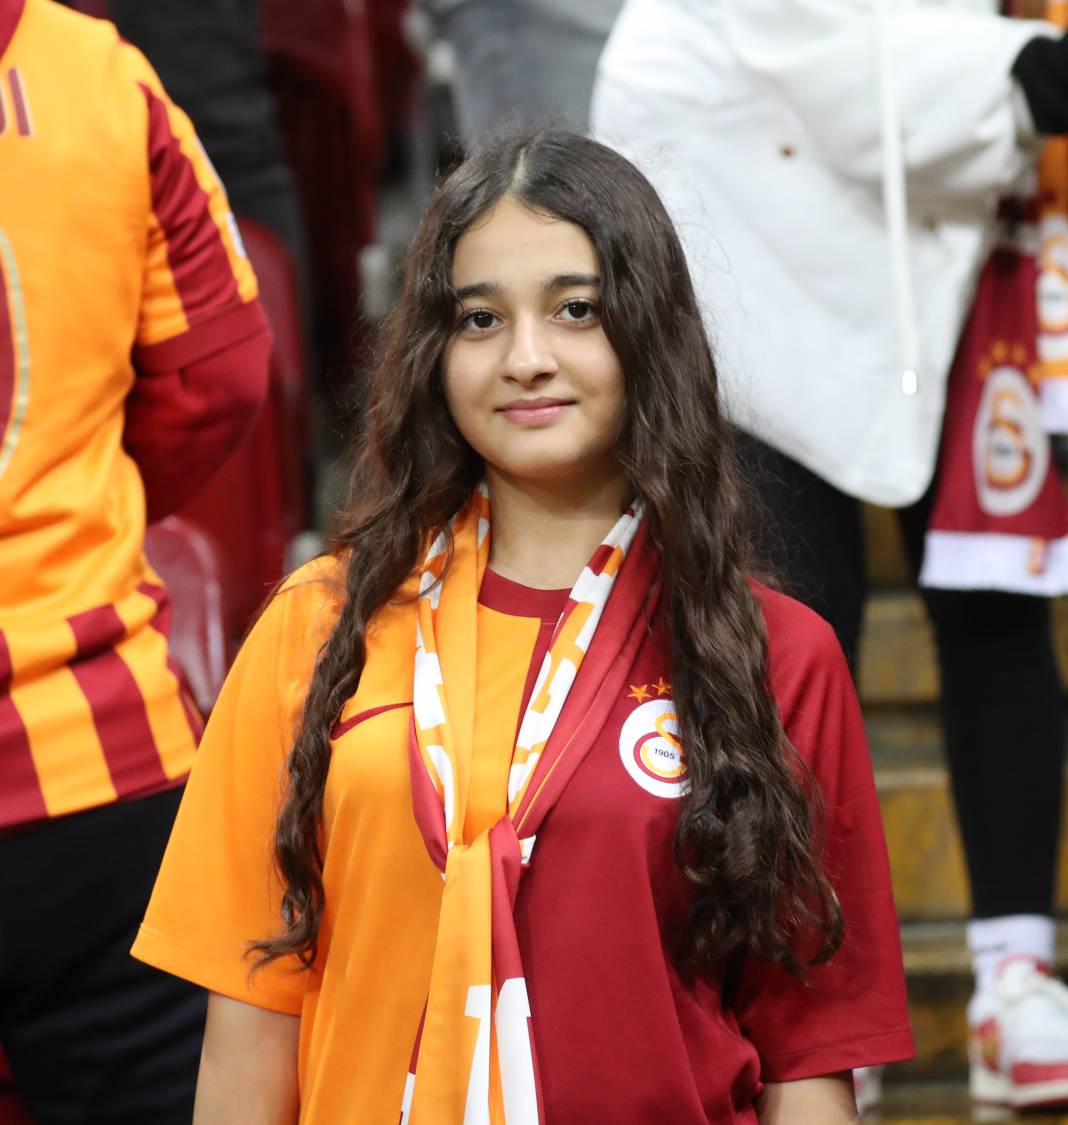 Galatasaray Adana Demirspor'u işte böyle yendi. Fotoğraflardaki inanılmaz ayrıntılar 53